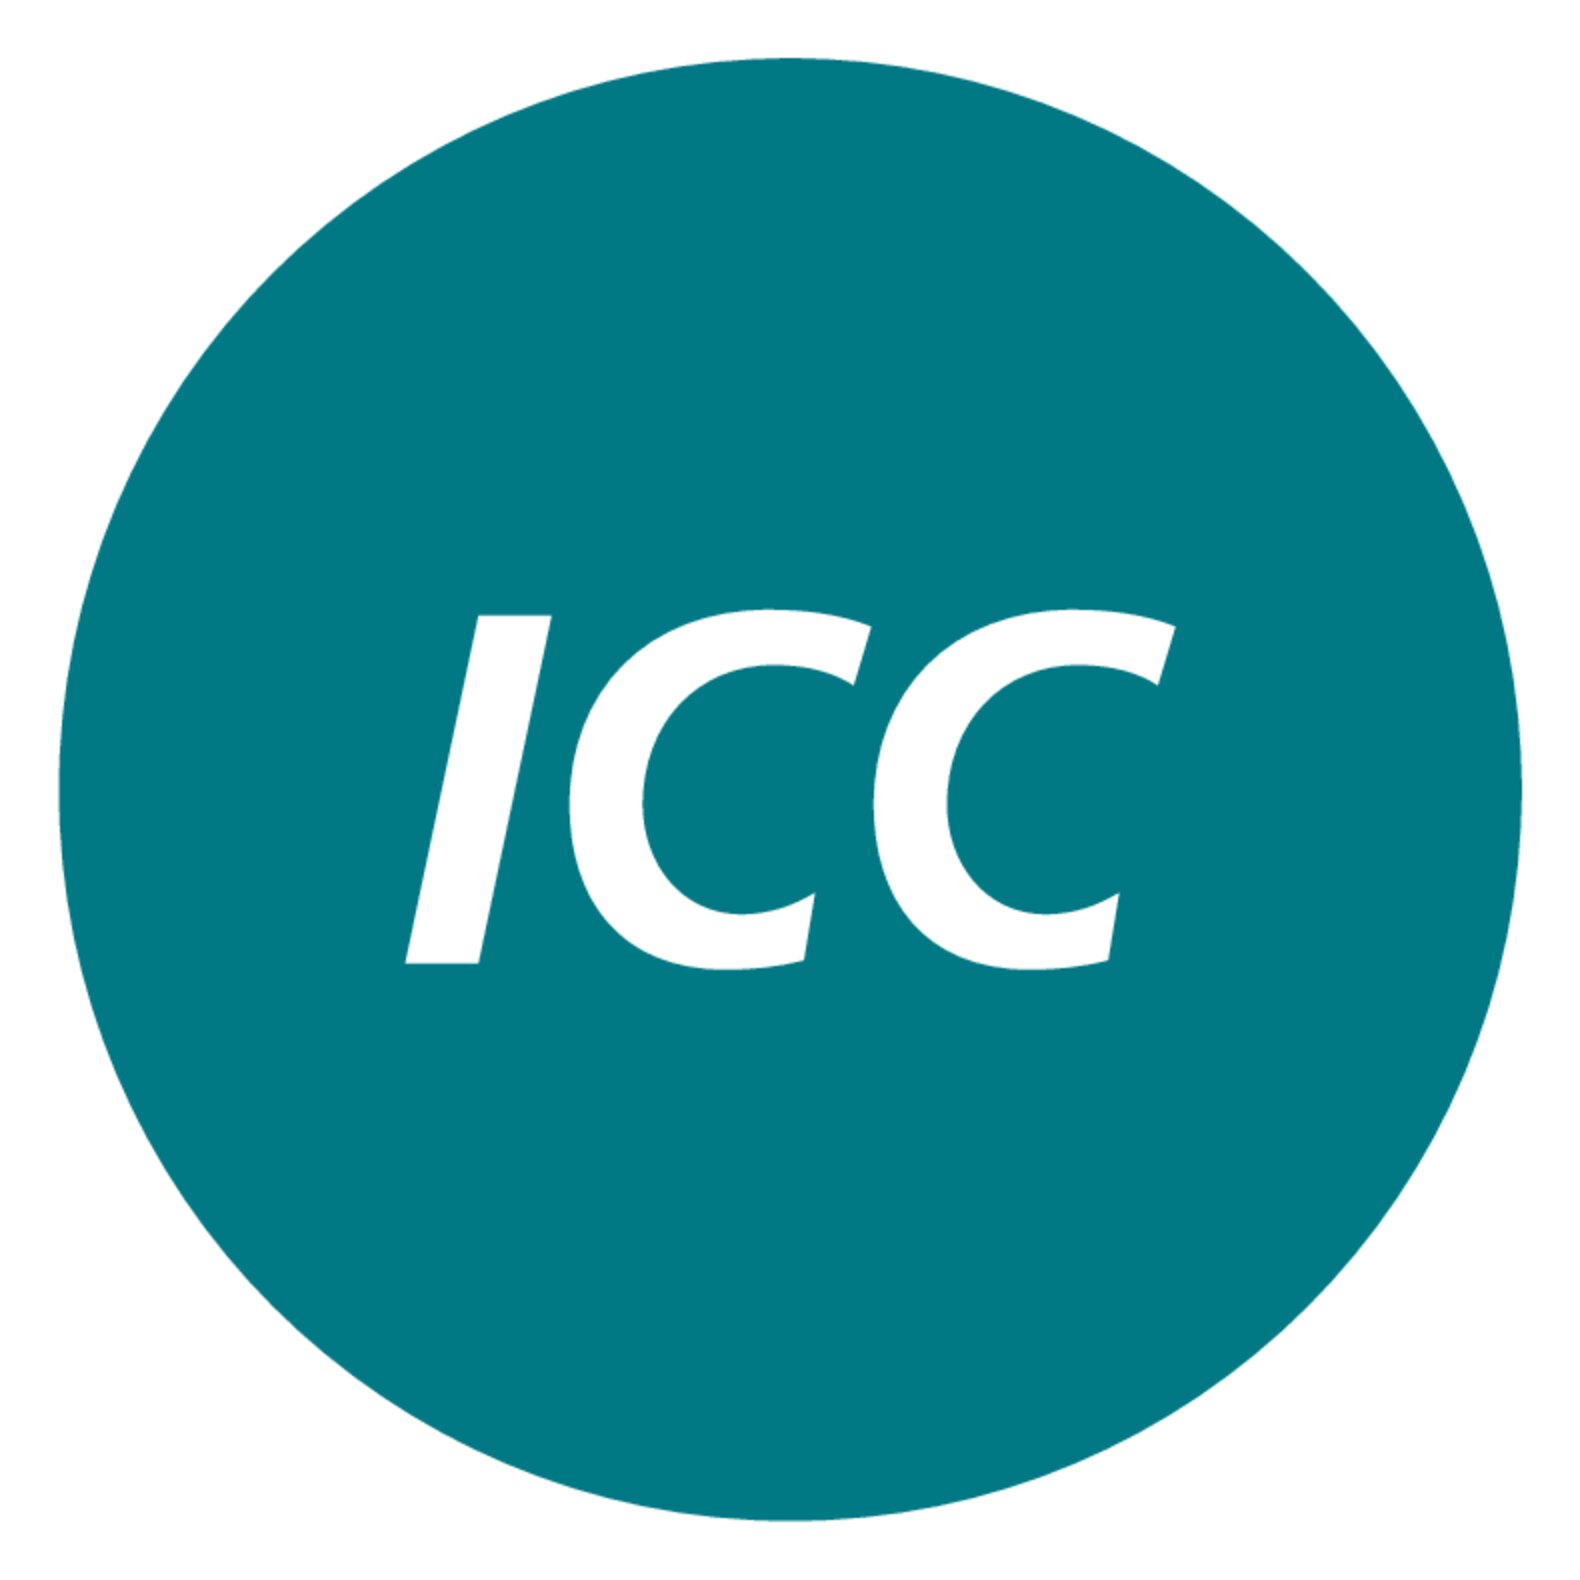 Icon ICC Controllo intelligente a cascata - Regolazione automatica e auto-ottimizzante dei parametri di regolazione